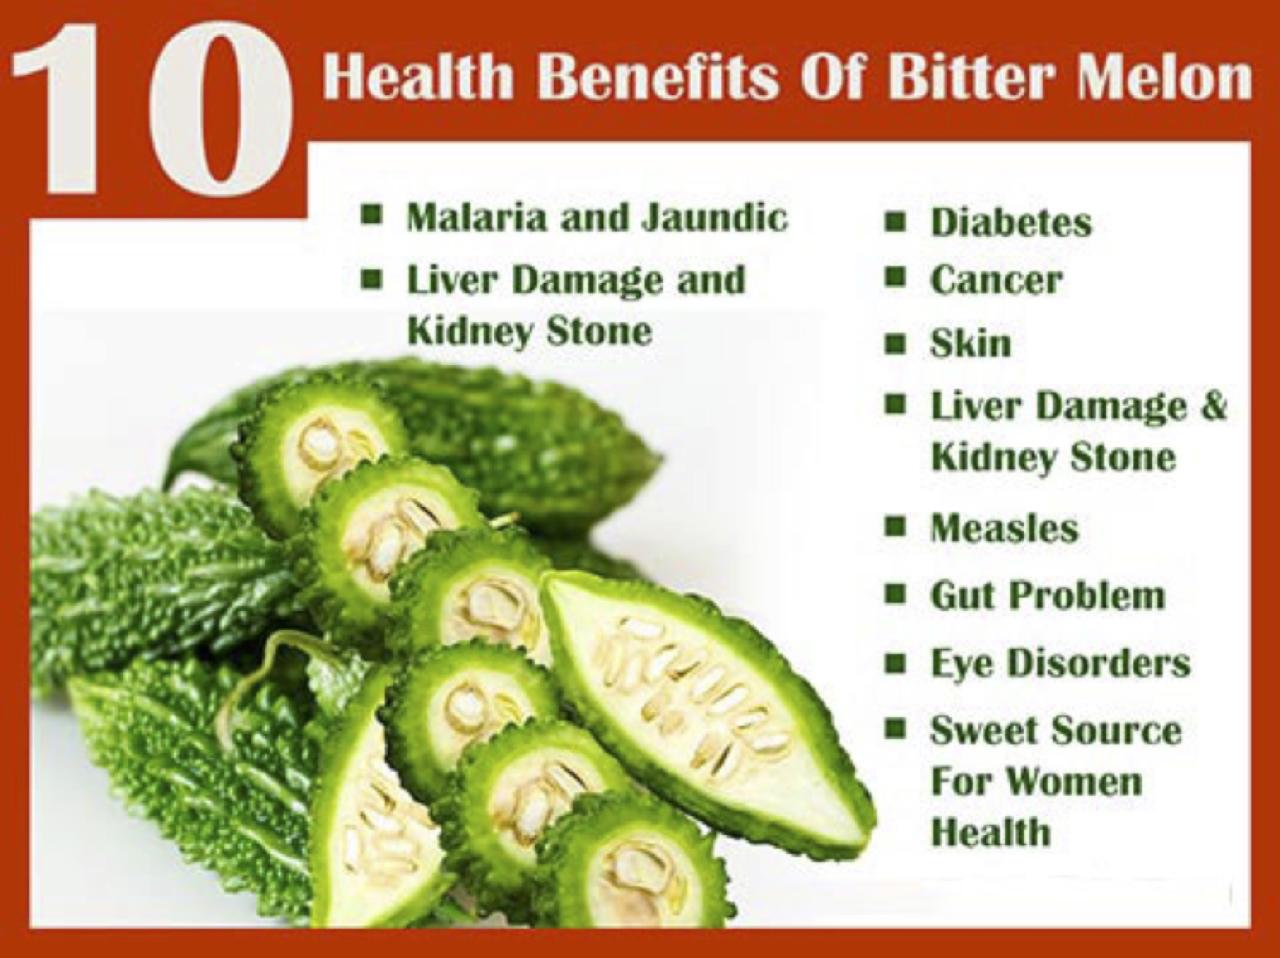 Bitter melon benefits health